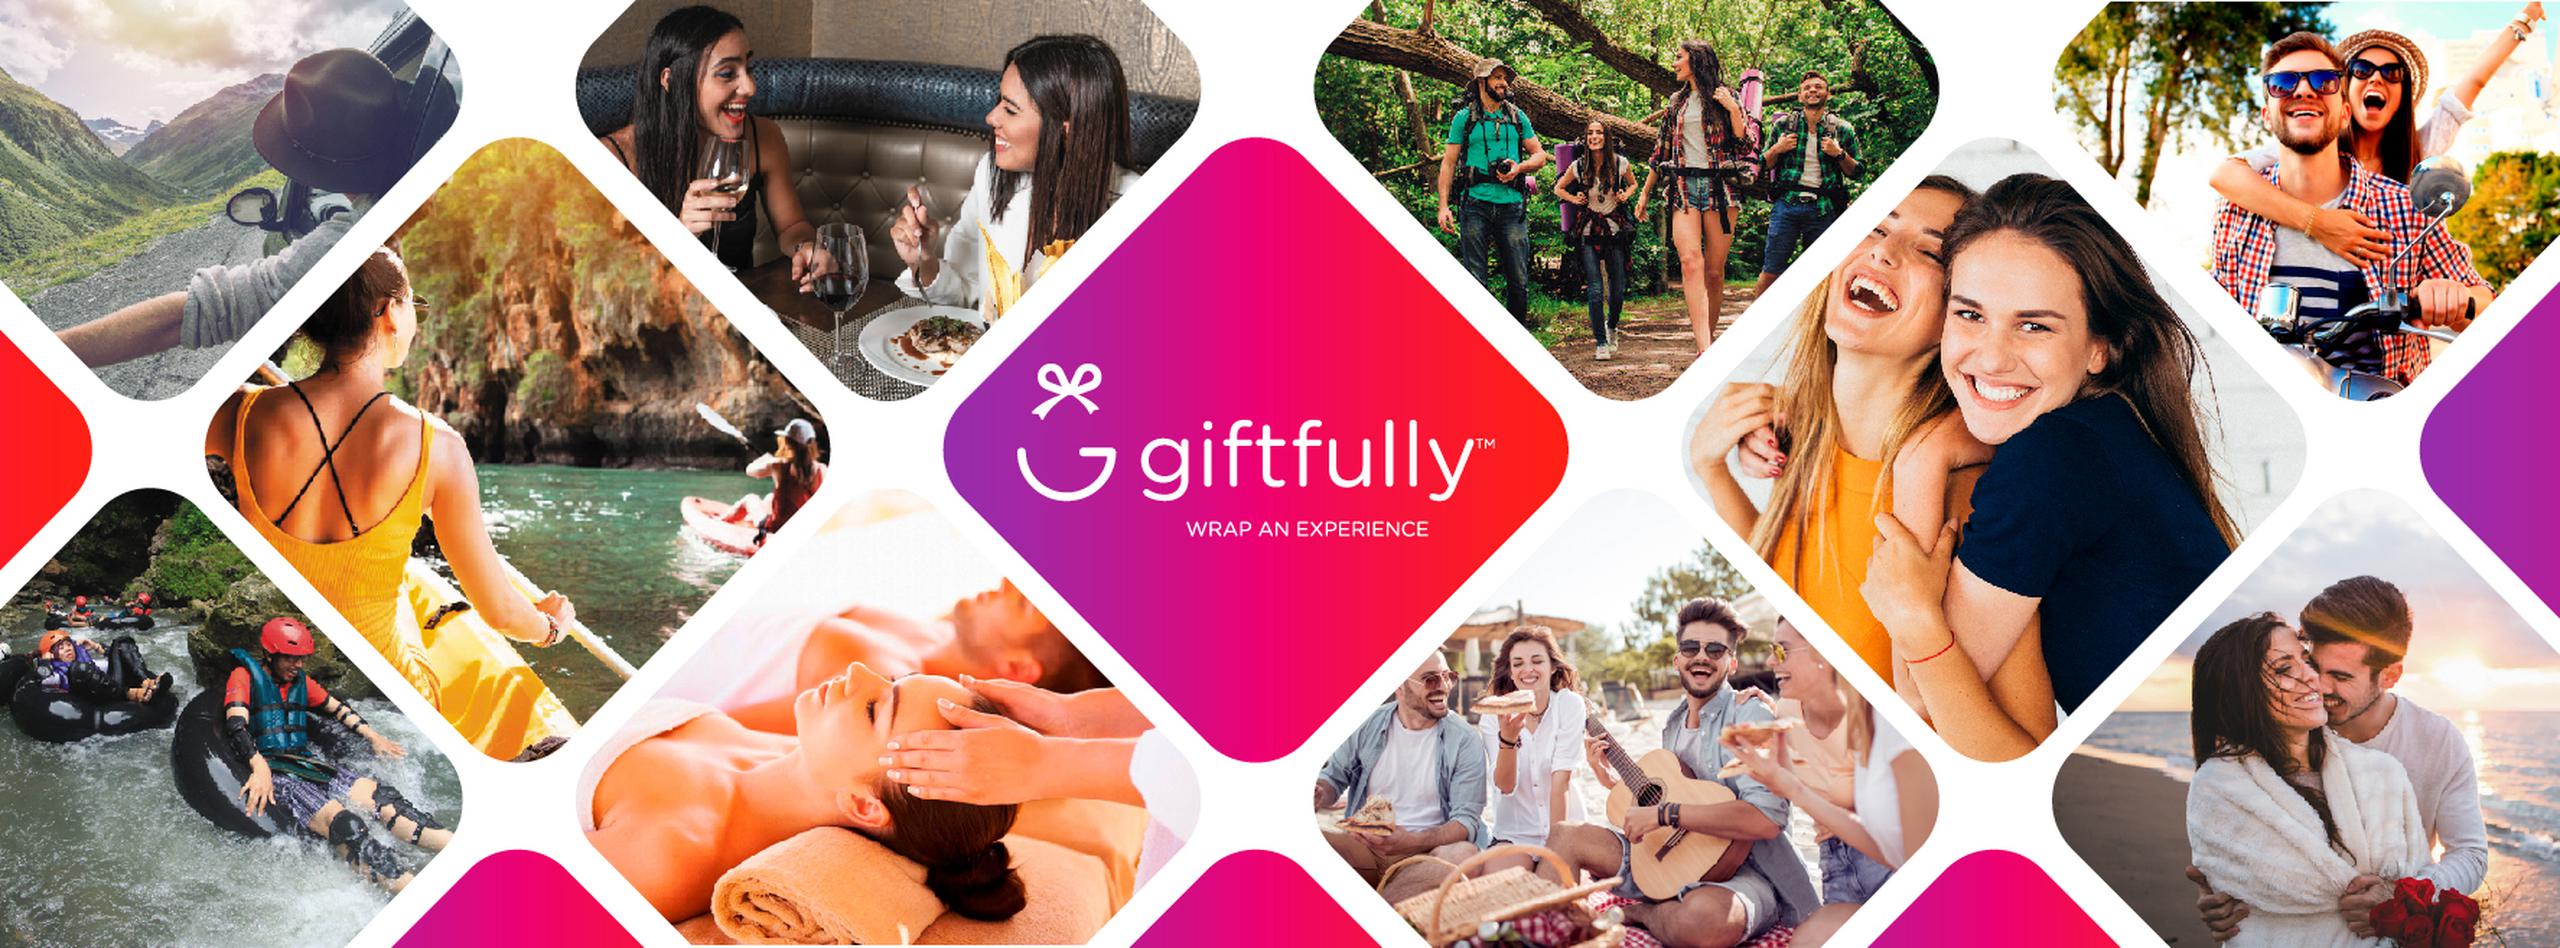 Giftfully integra una inmensa variedad de experiencias disponibles en la isla para vivir, obsequiar, recompensar e incentivar en cualquier época del año.